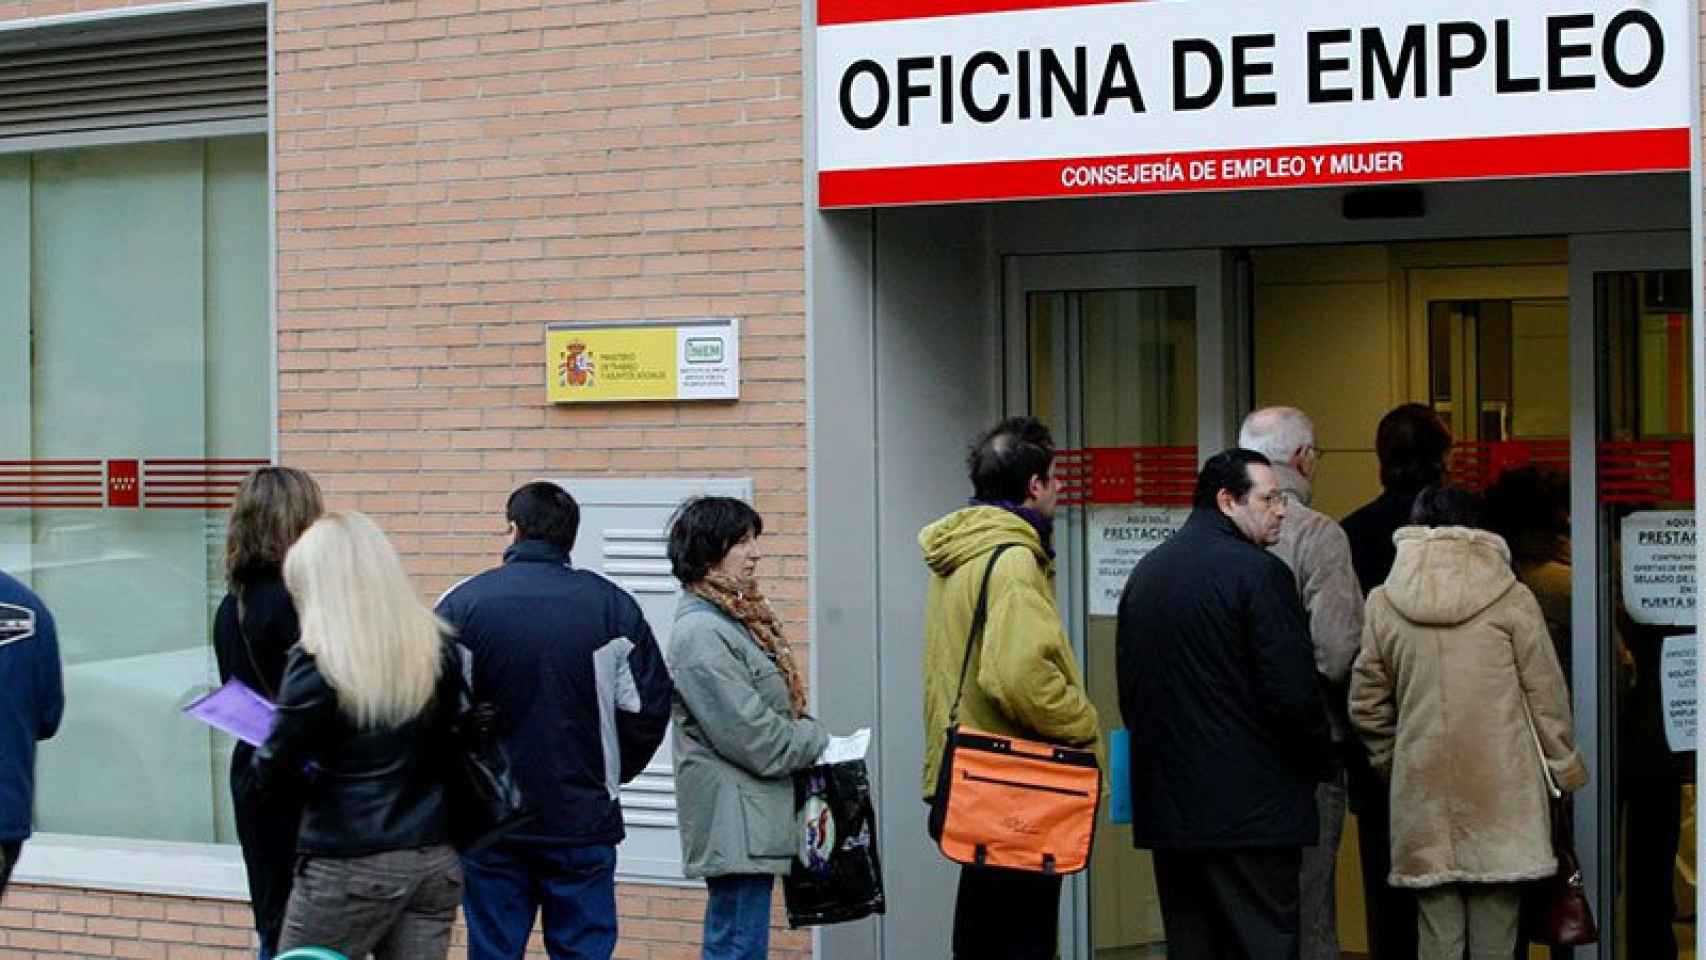 Ciudadanos hacen cola para entrar en una oficina de empleo / EFE